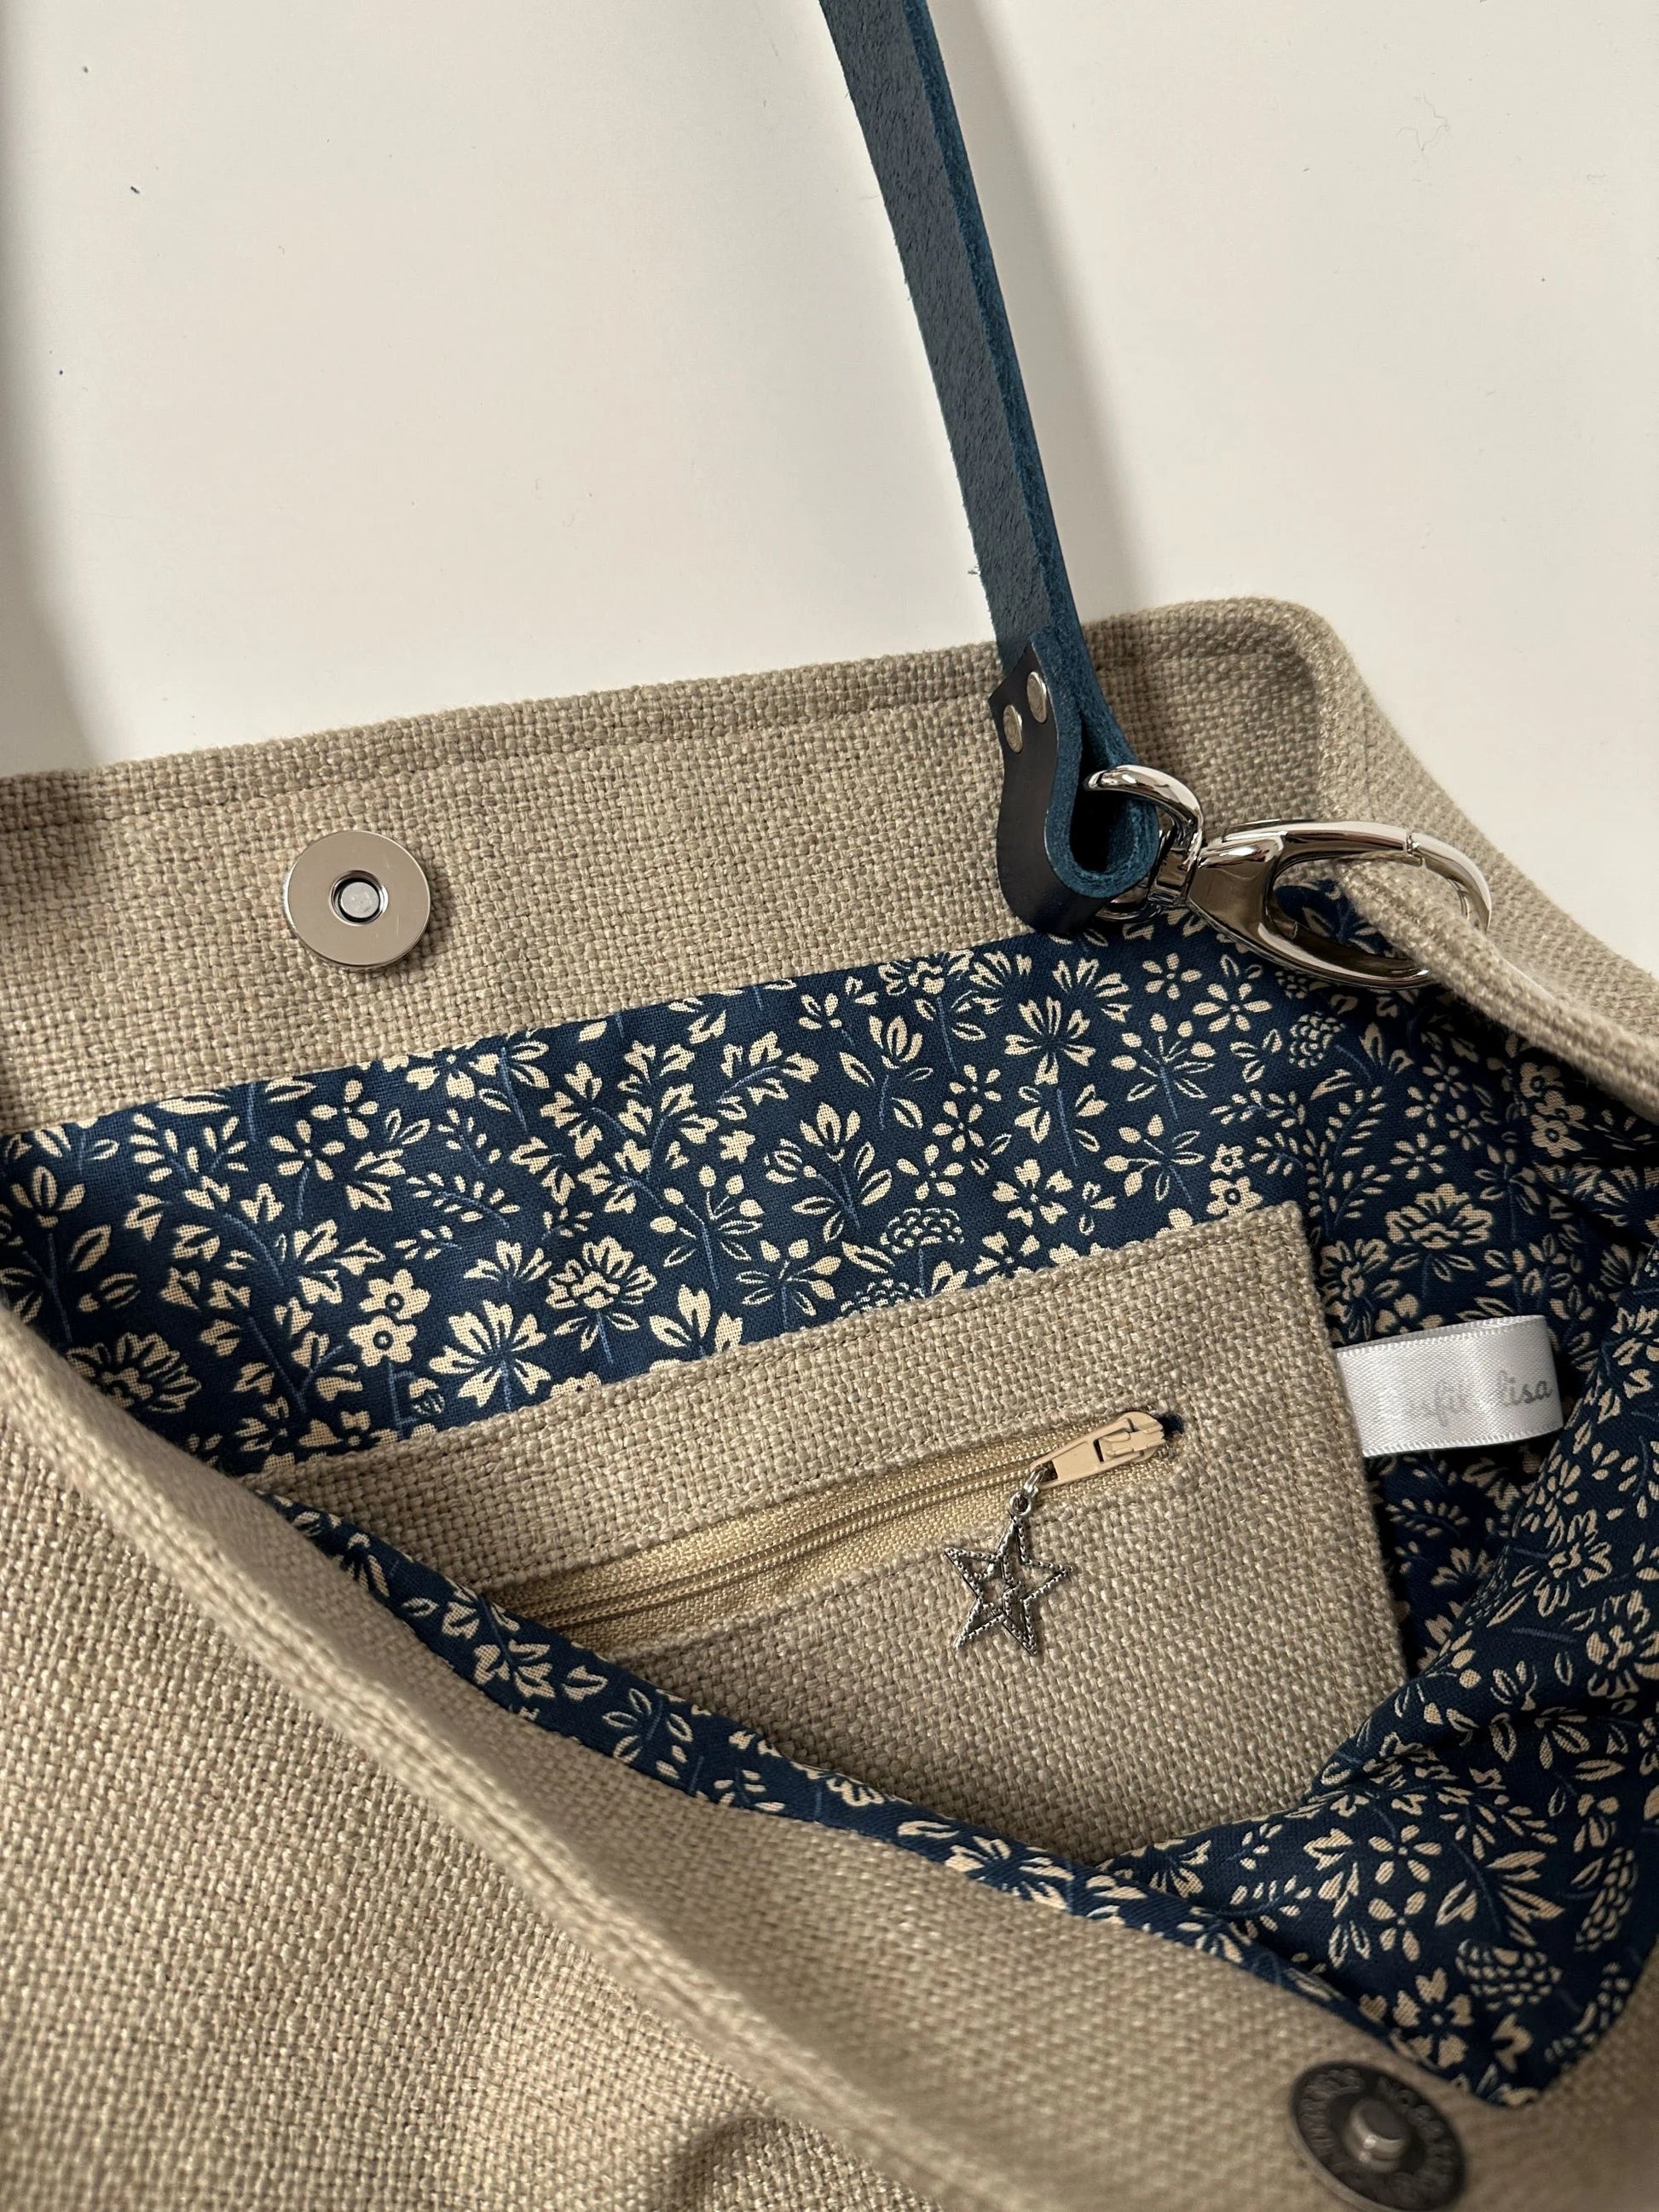 La poche intérieure zippée du sac Hobo en lin beige et son anse en cuir bleu marine .